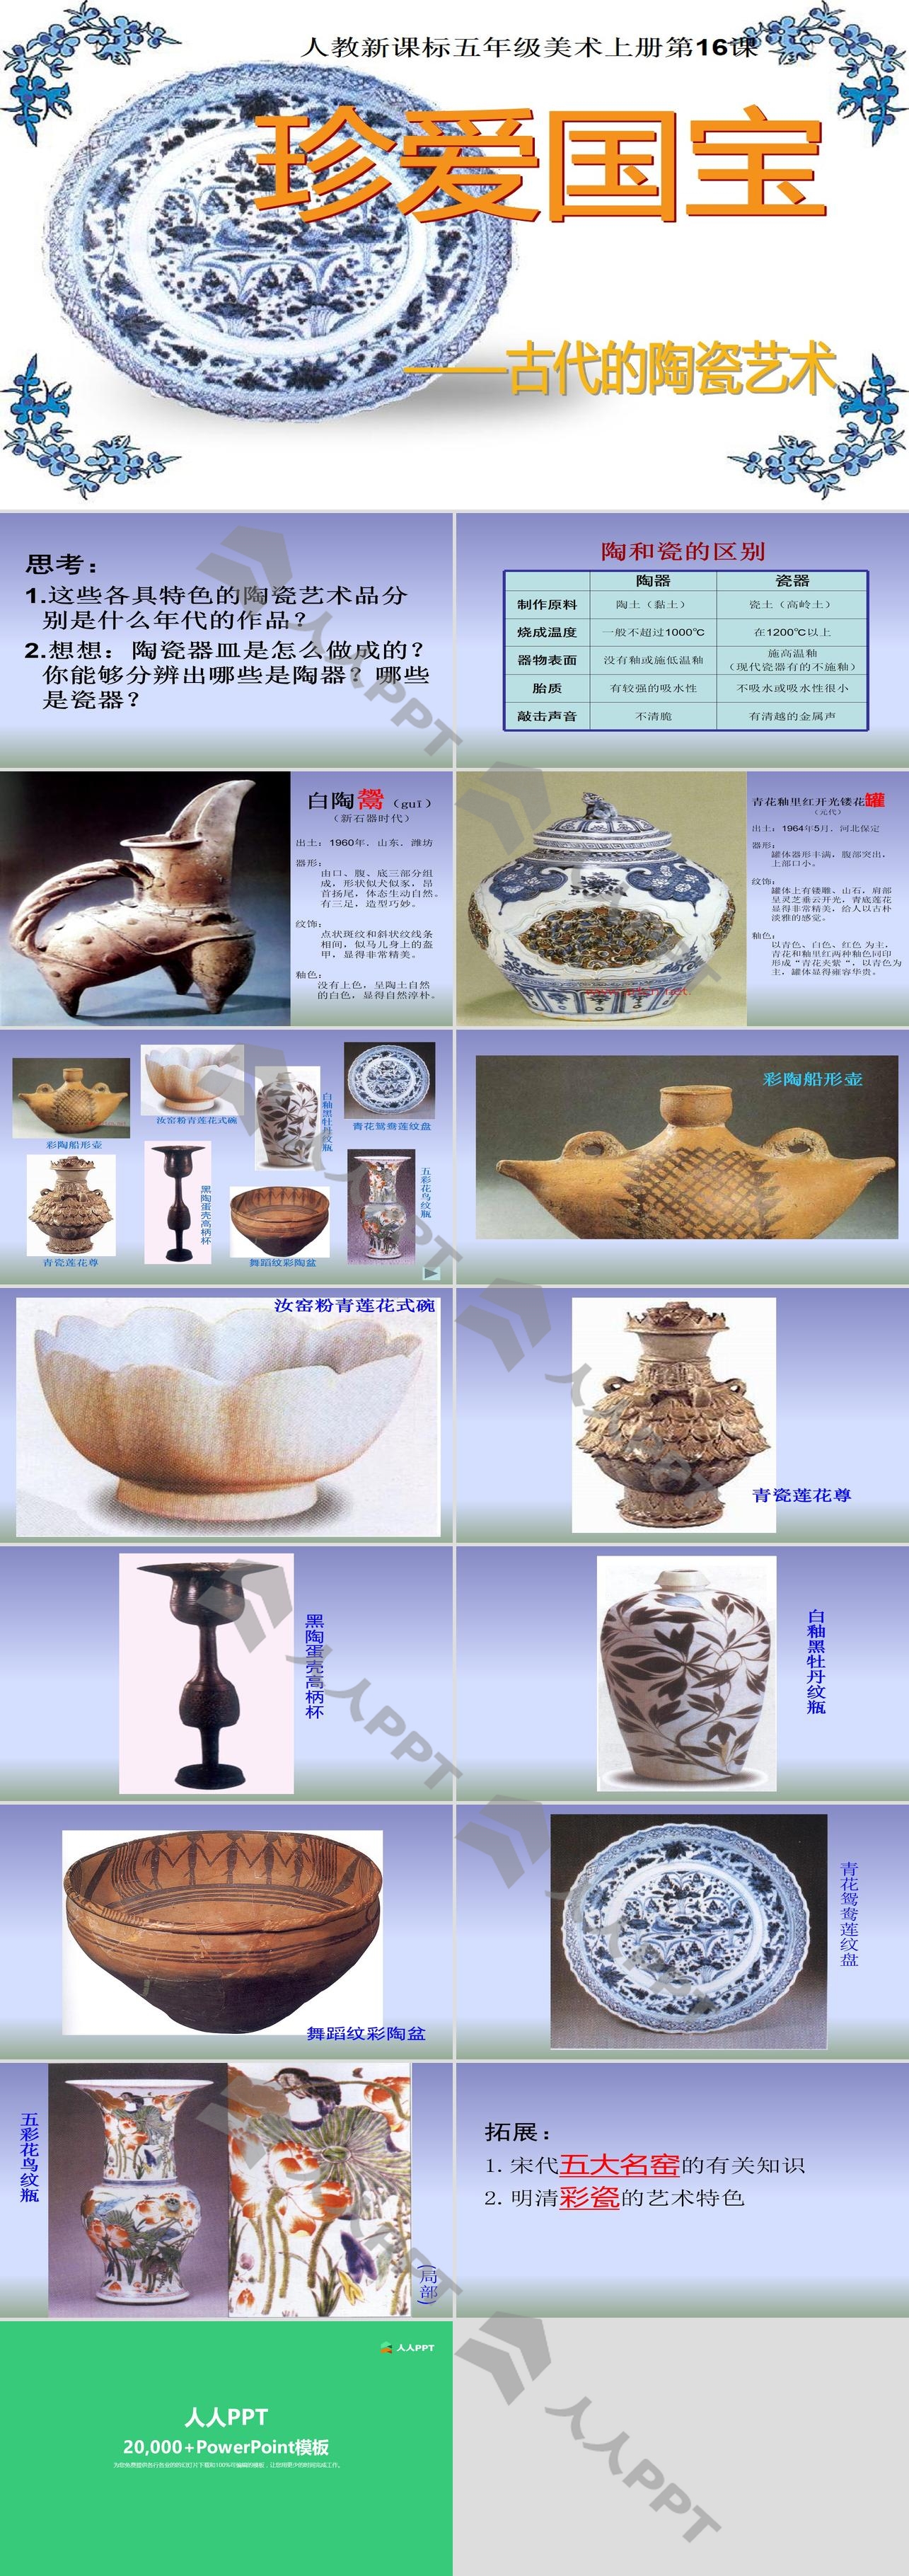 《珍爱国宝――古代的陶瓷艺术 》PPT课件长图